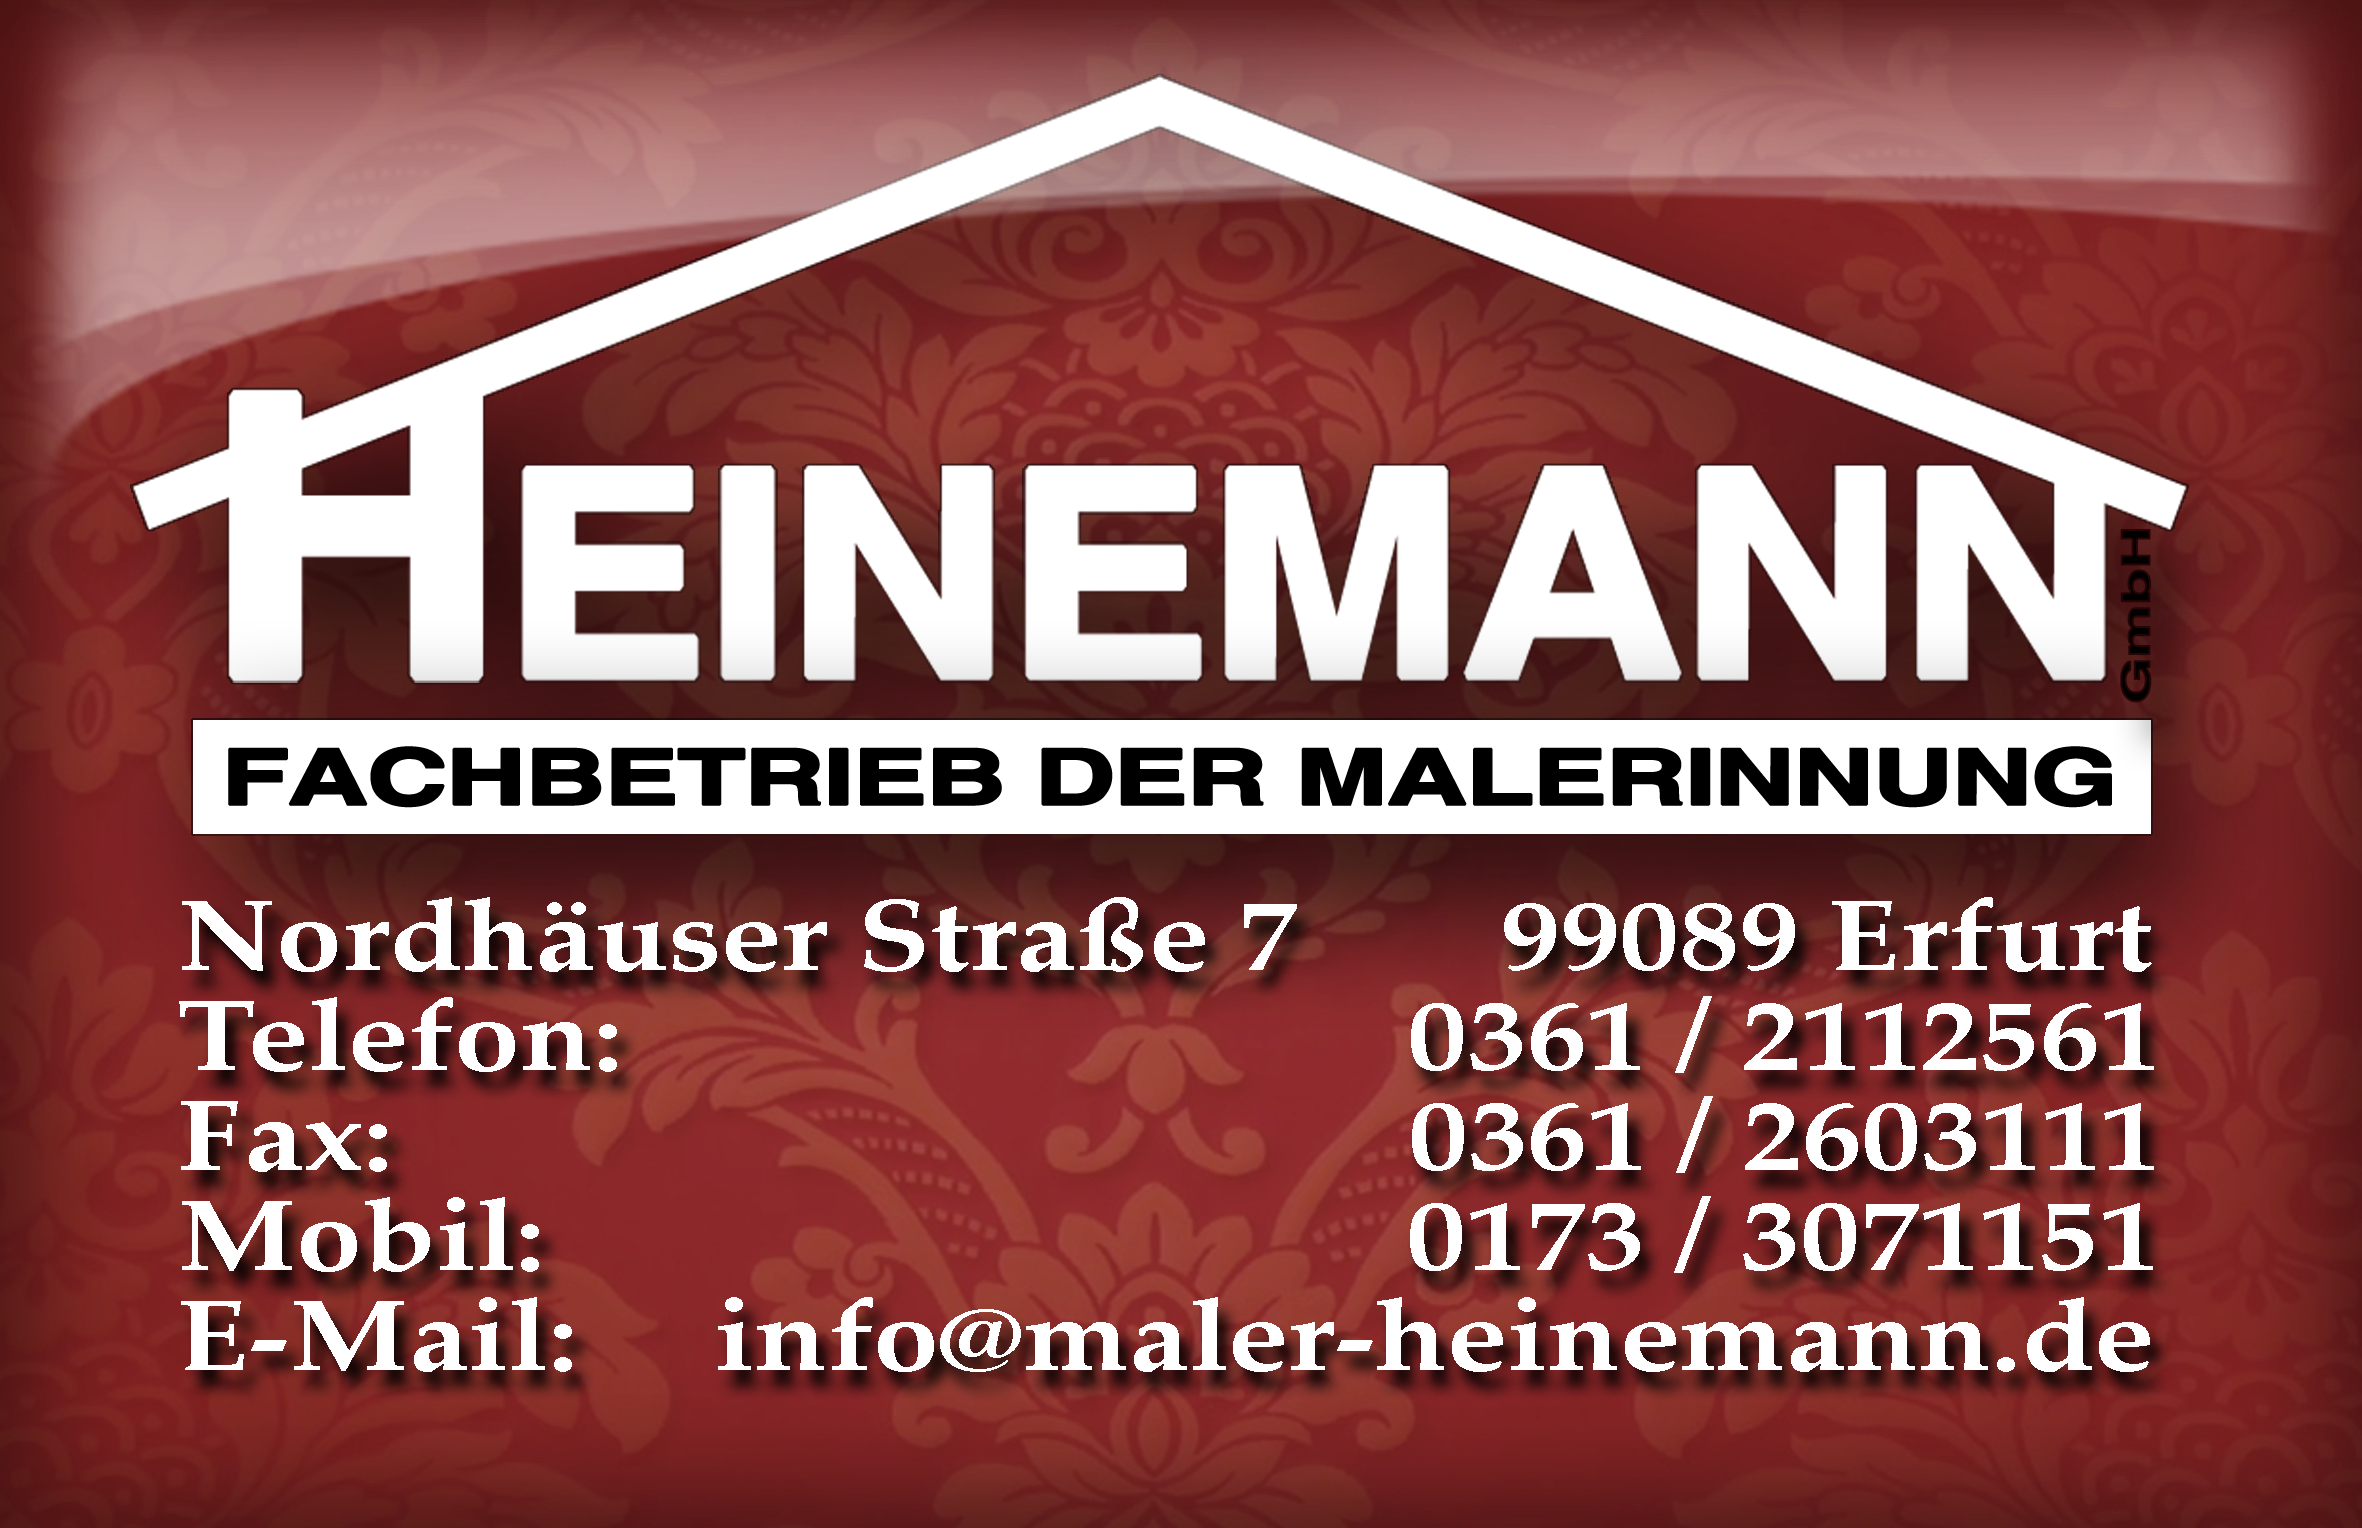 HEINEMANN GmbH - Fachbetrieb der Malerinnung Erfurt